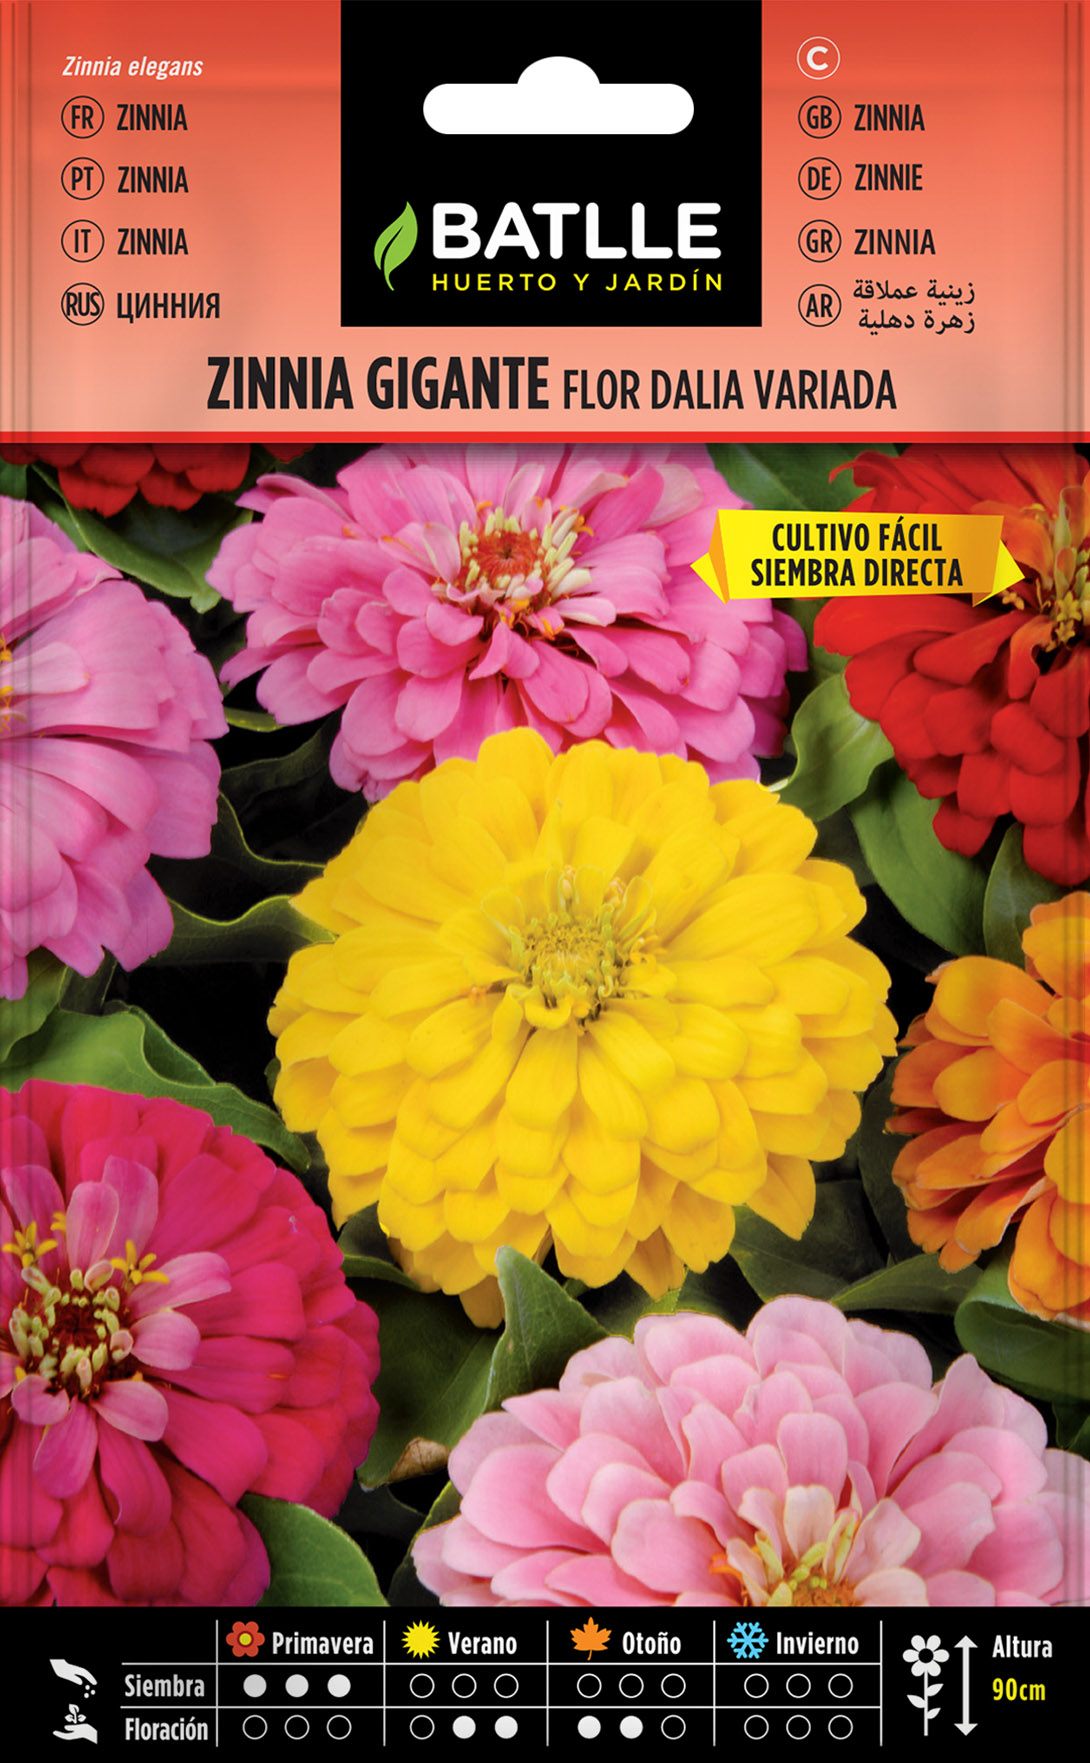 Zinnia Gigante Flor Dalia Variada - Semillas Batlle - Huerto y Jardín